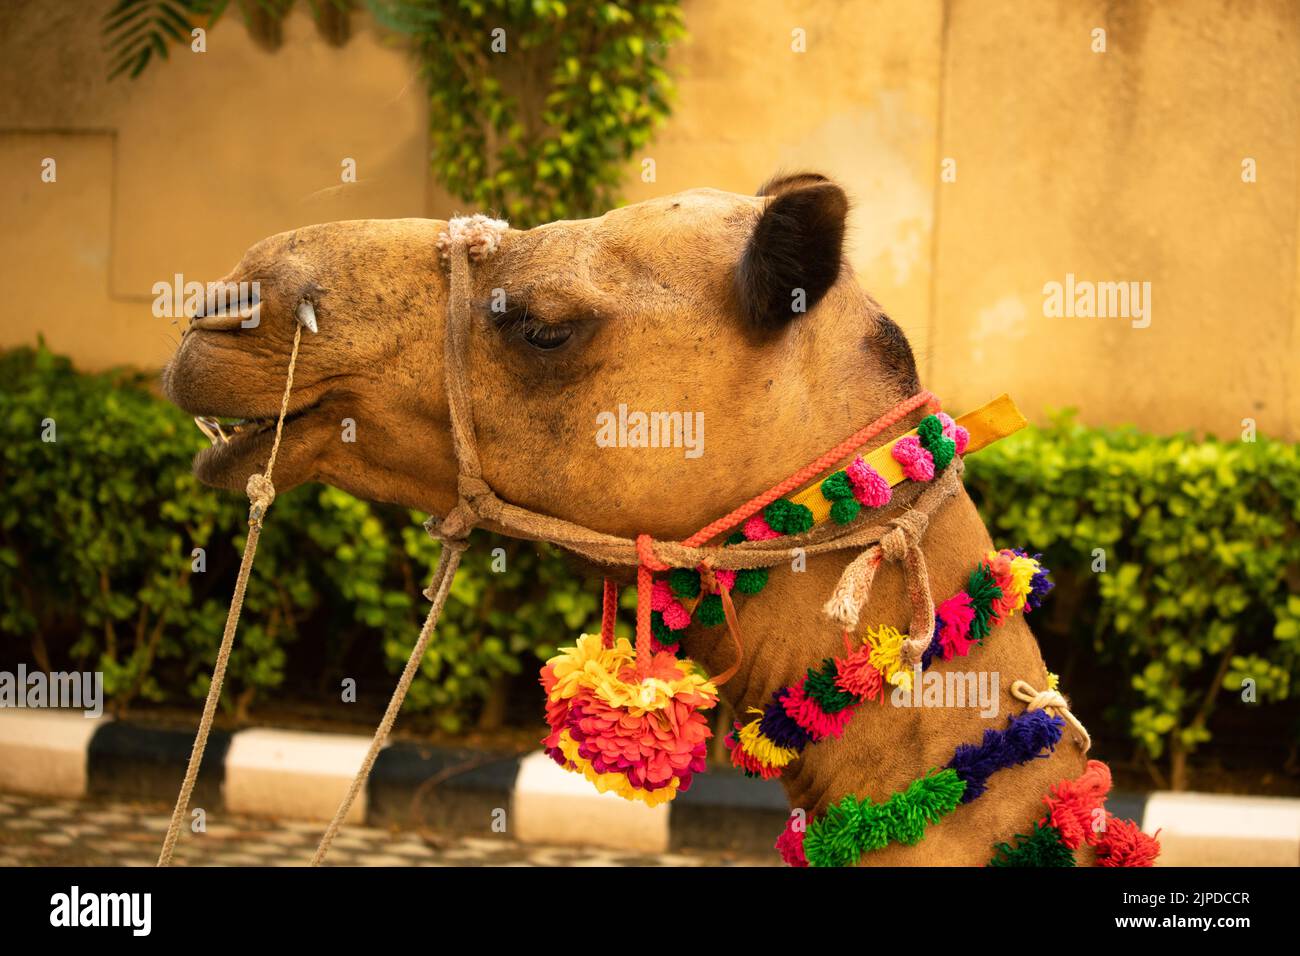 Traditionell Dekorierte Nahaufnahme Des Indischen Kamels Auf Der Messe Mela Oder Yatra Mit Kordelkette In Mund Und Nase Stockfoto